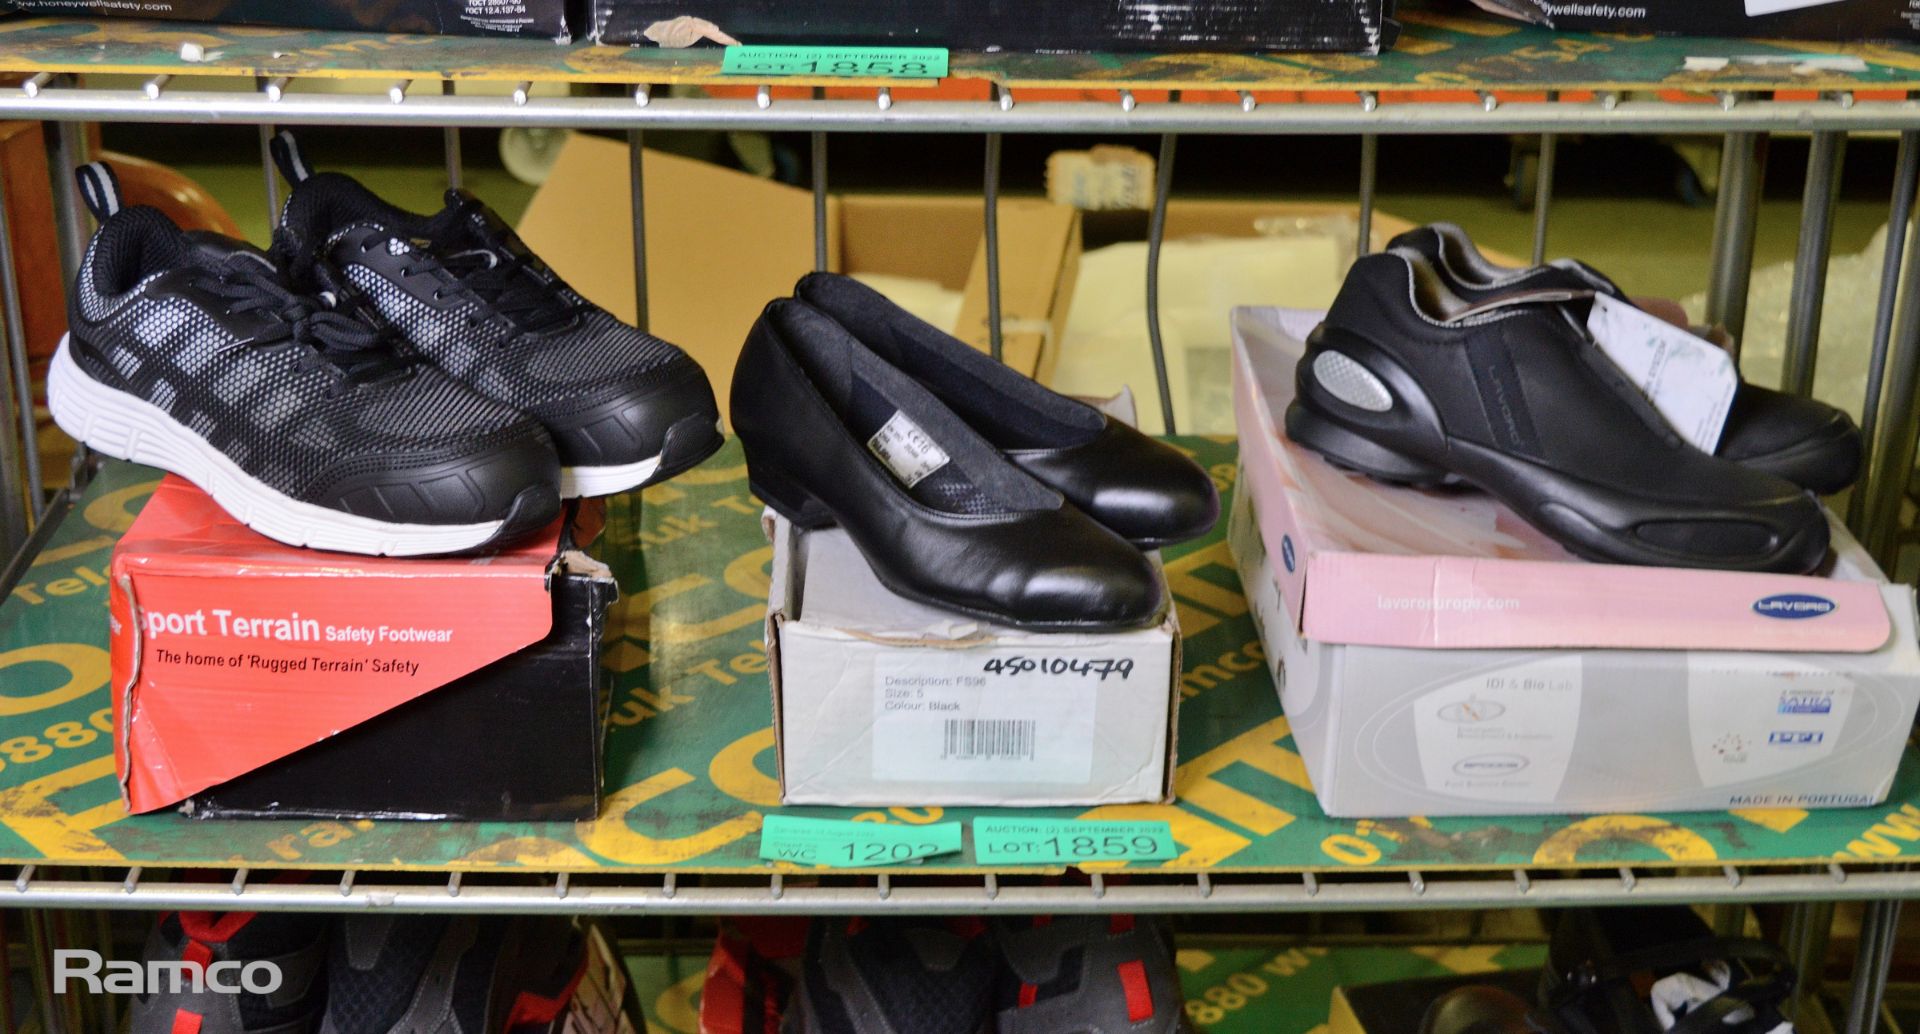 3x Workwear footwear - 1x size 9, 1x size 5, 1x size 4